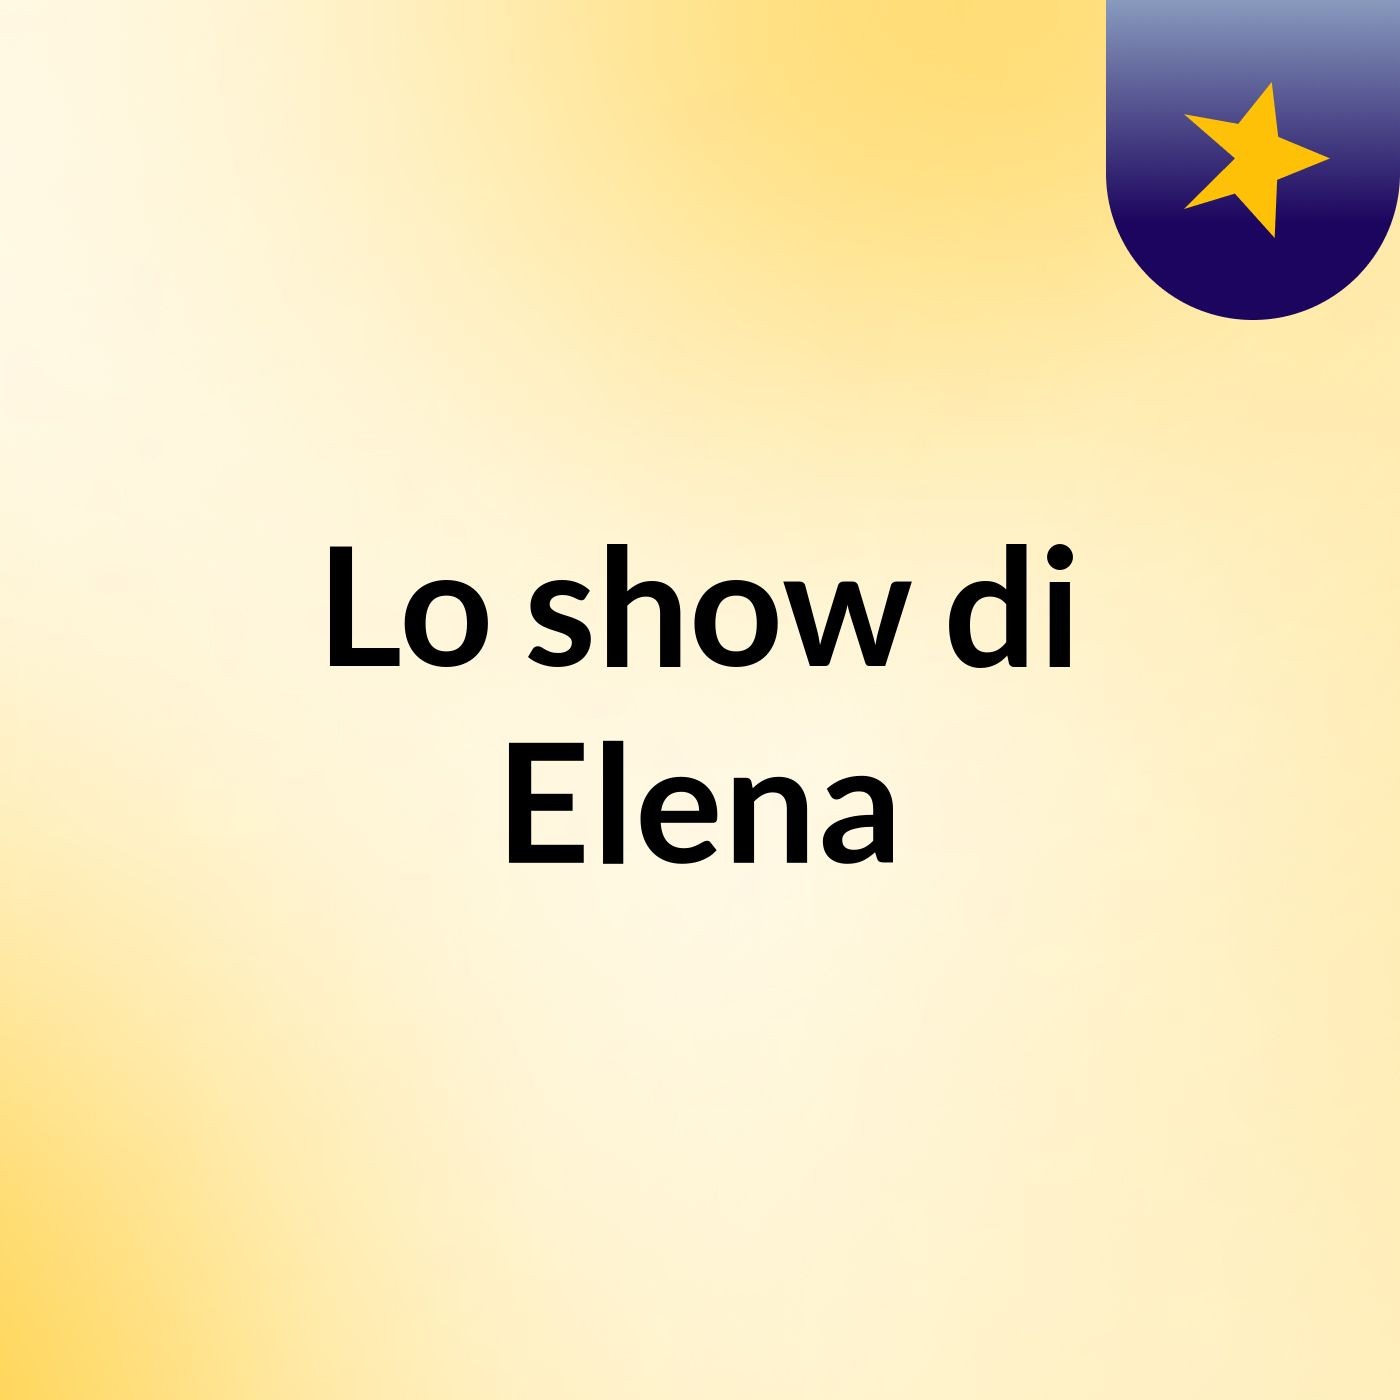 Lo show di Elena